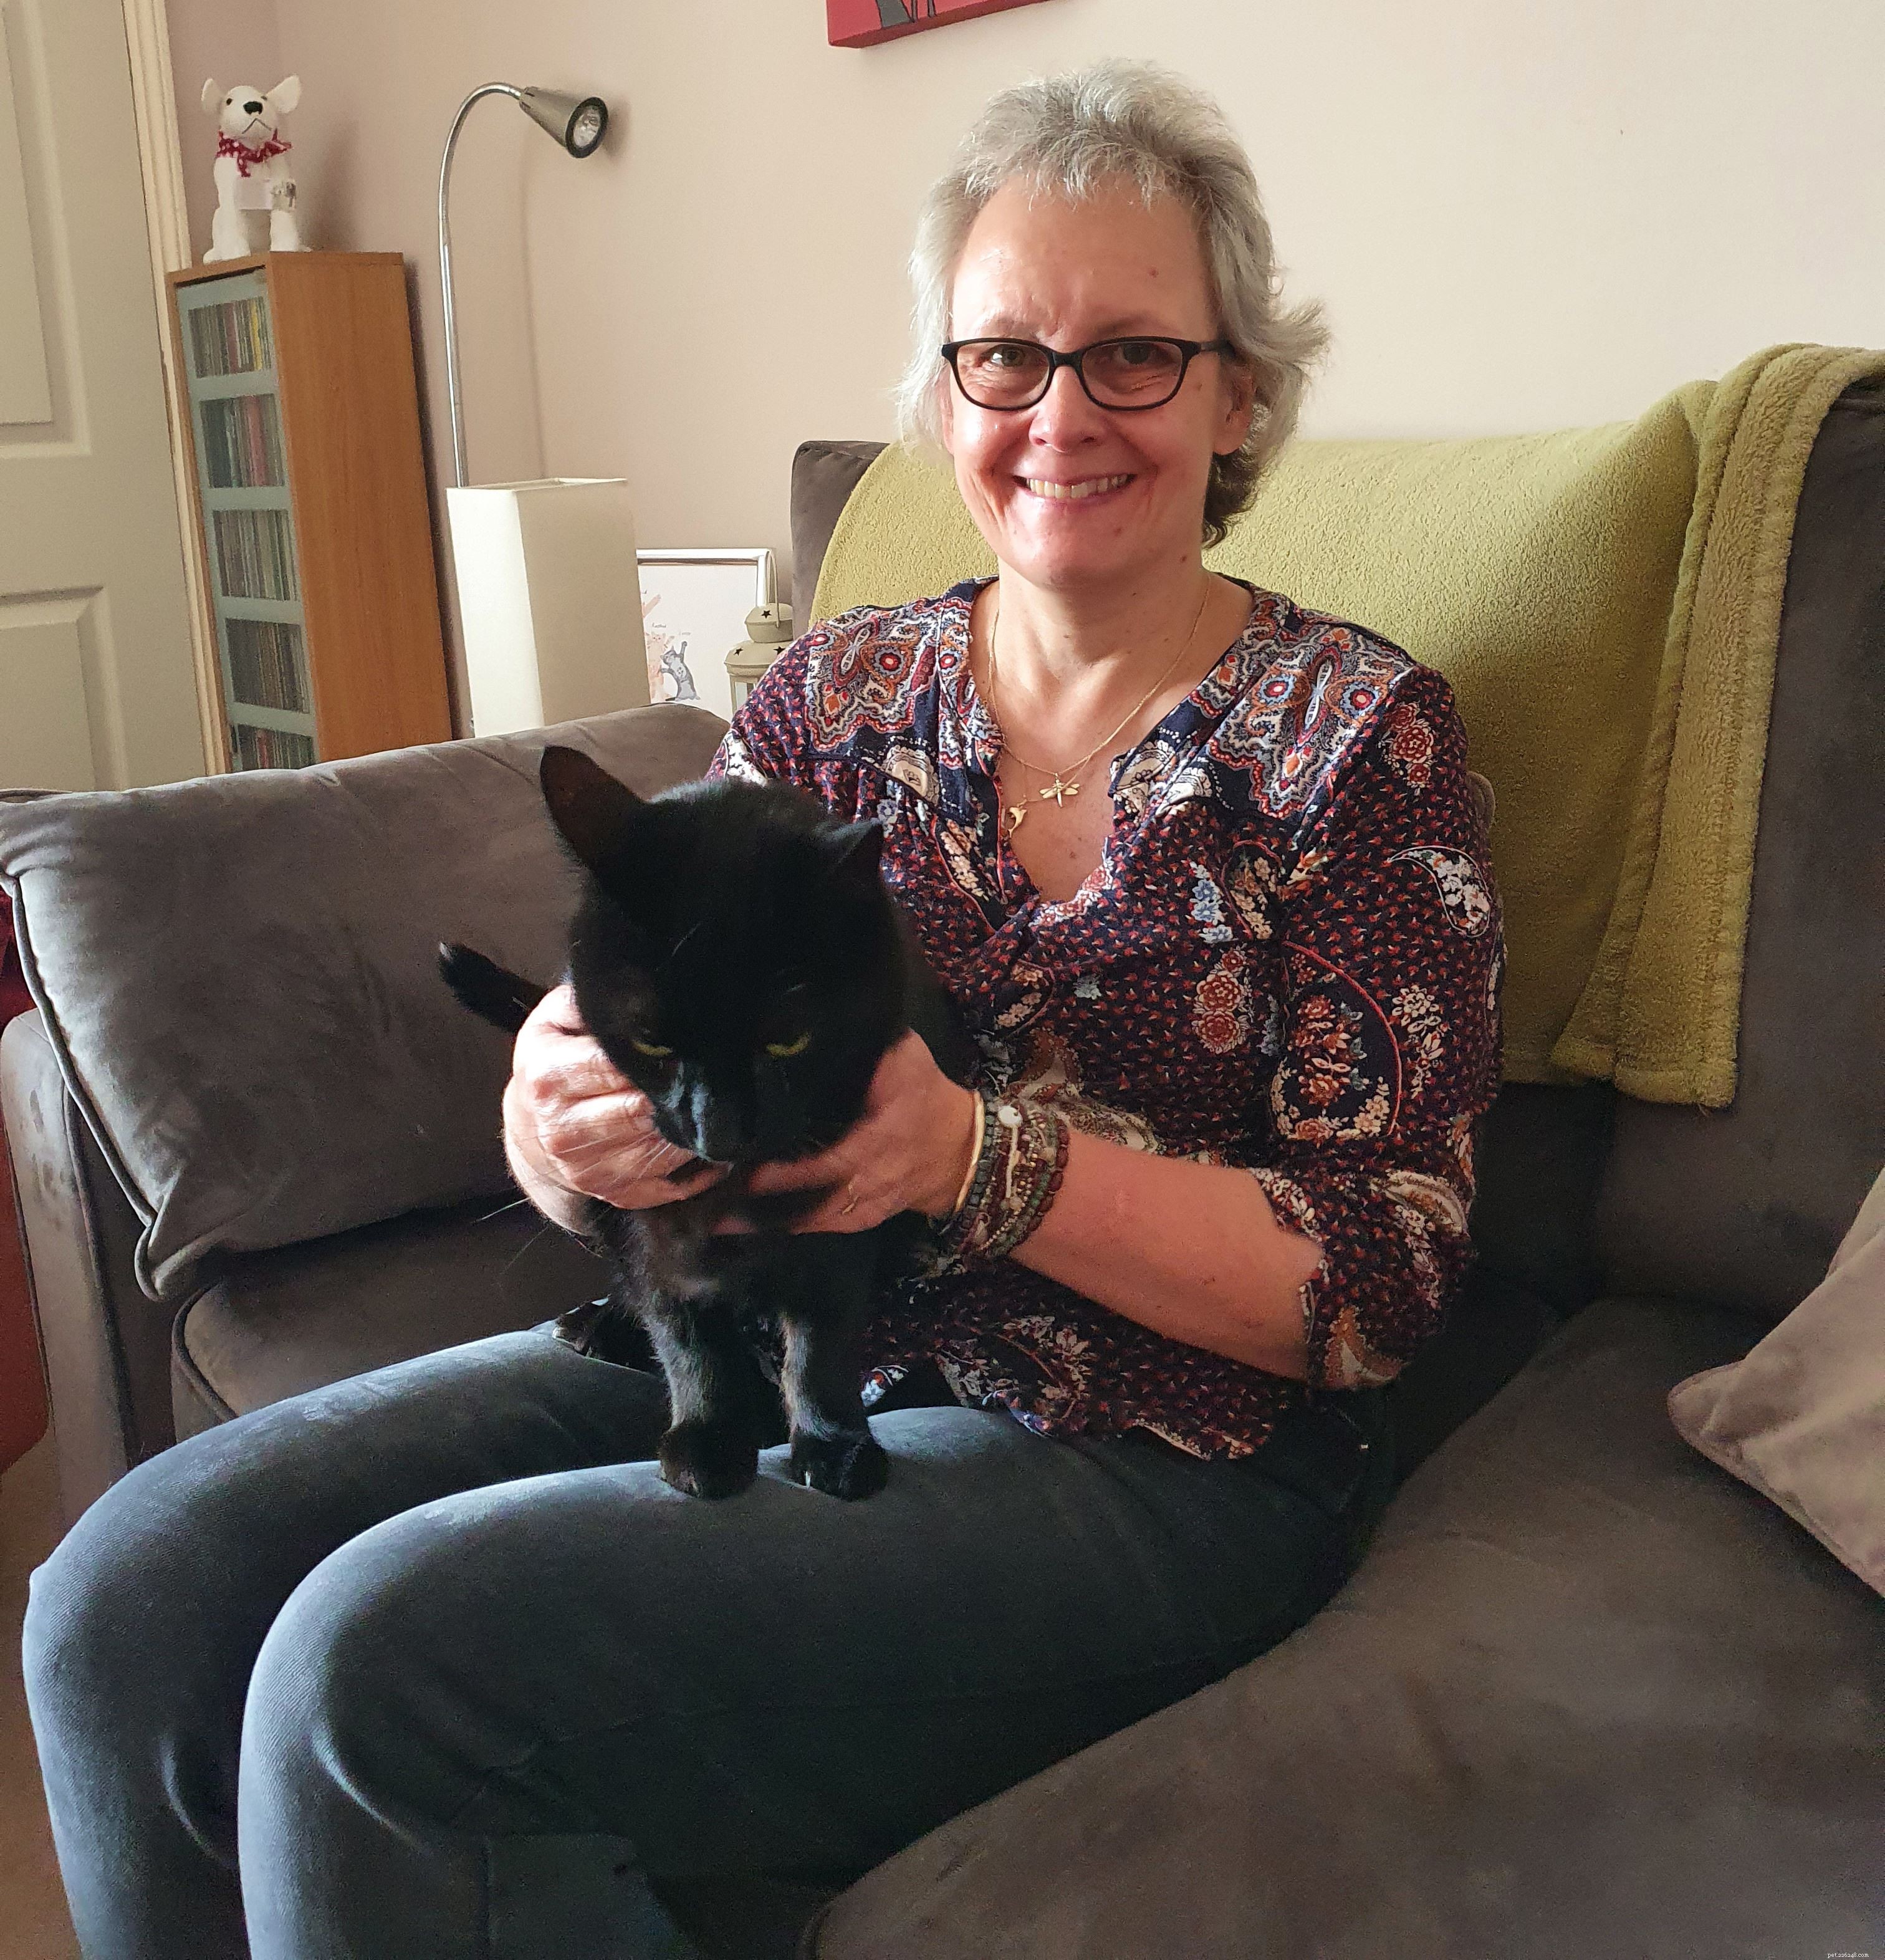 Sarah Muir samlar in pengar till katter efter att hennes egna moggies hjälpt henne genom cancerbehandling i lockdown